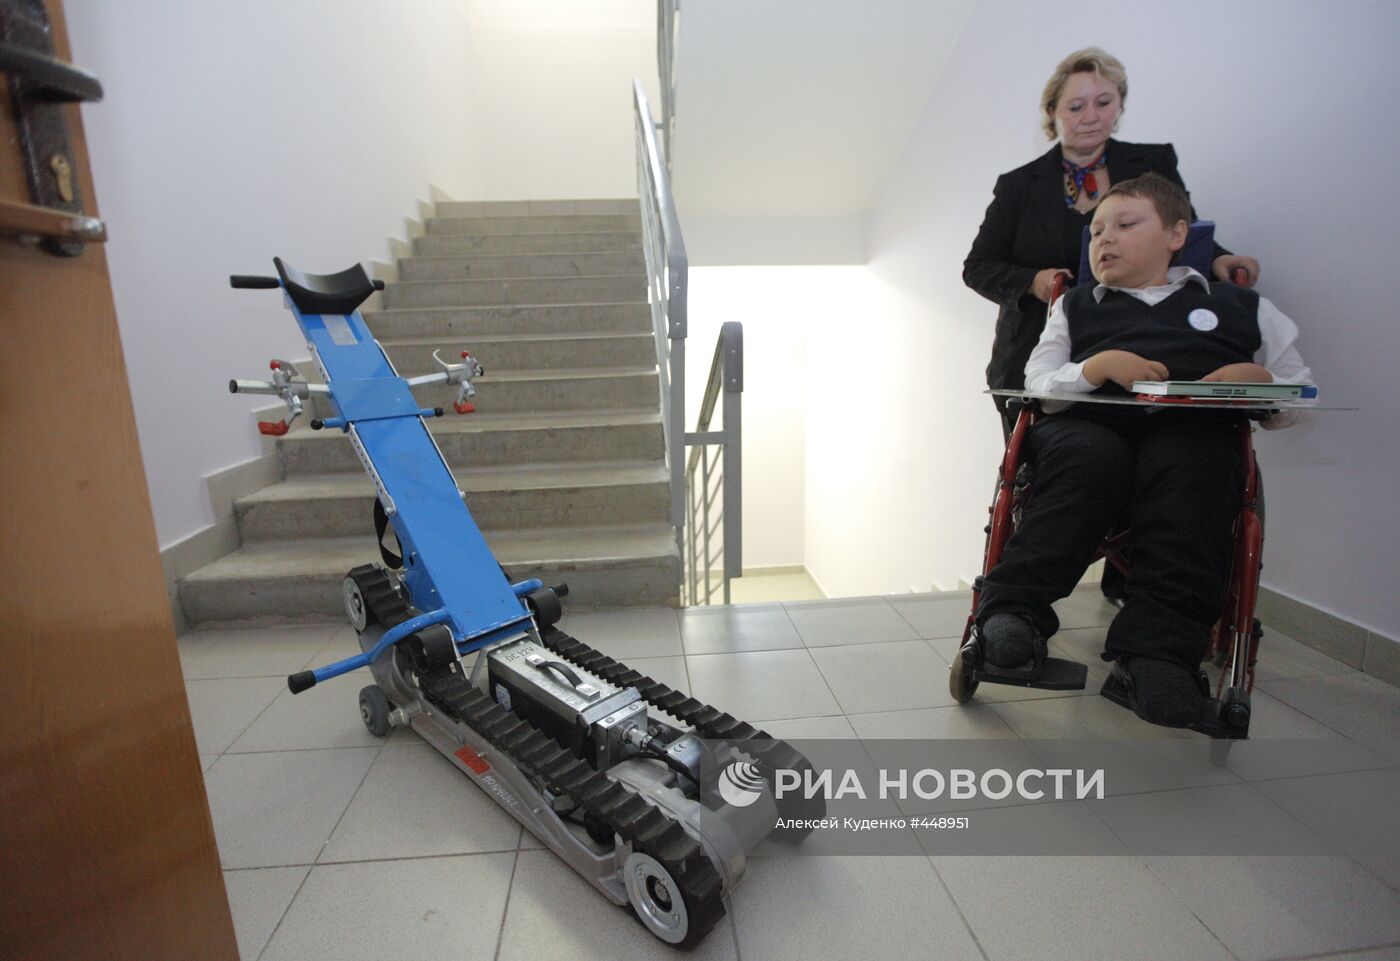 Ступенькоход для инвалидов установлен в московской школе